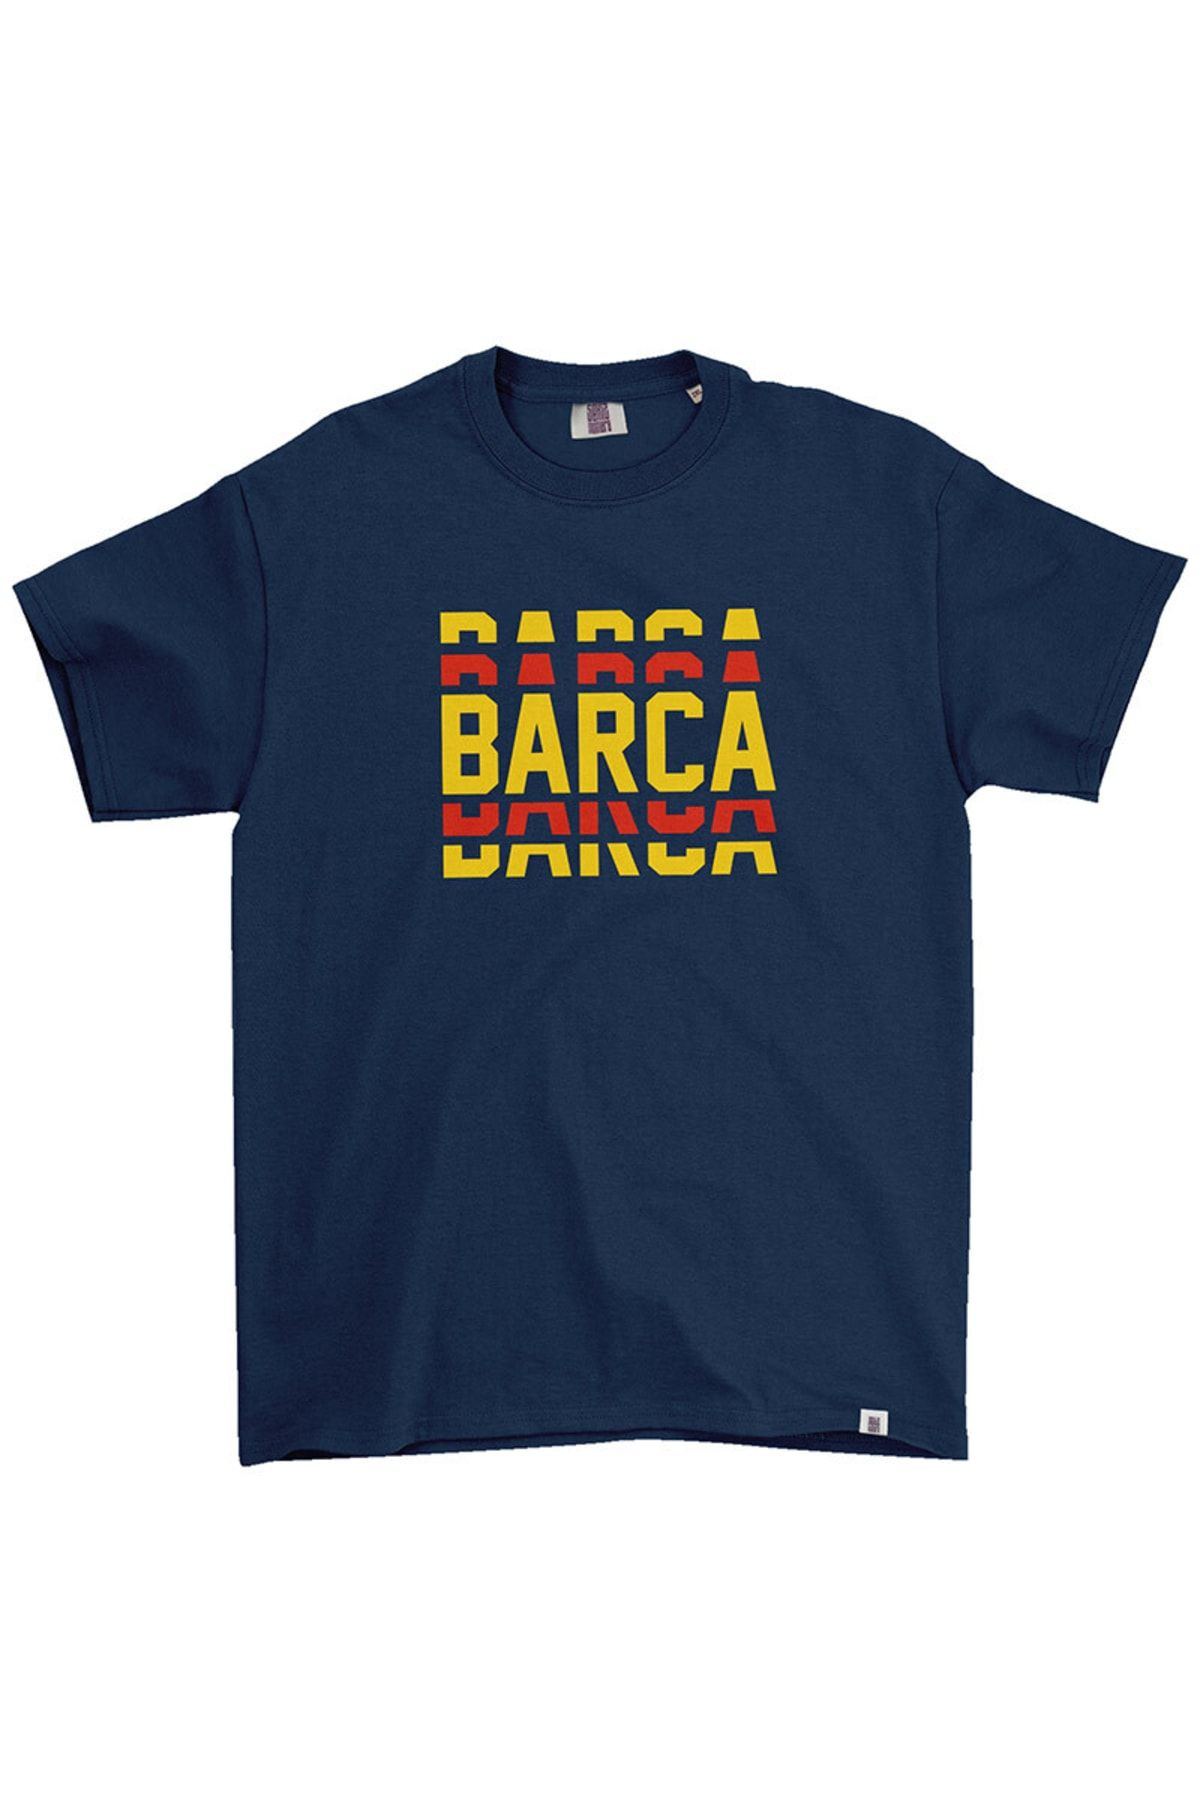 Sekiz Numara Barcelona Barca Tişört